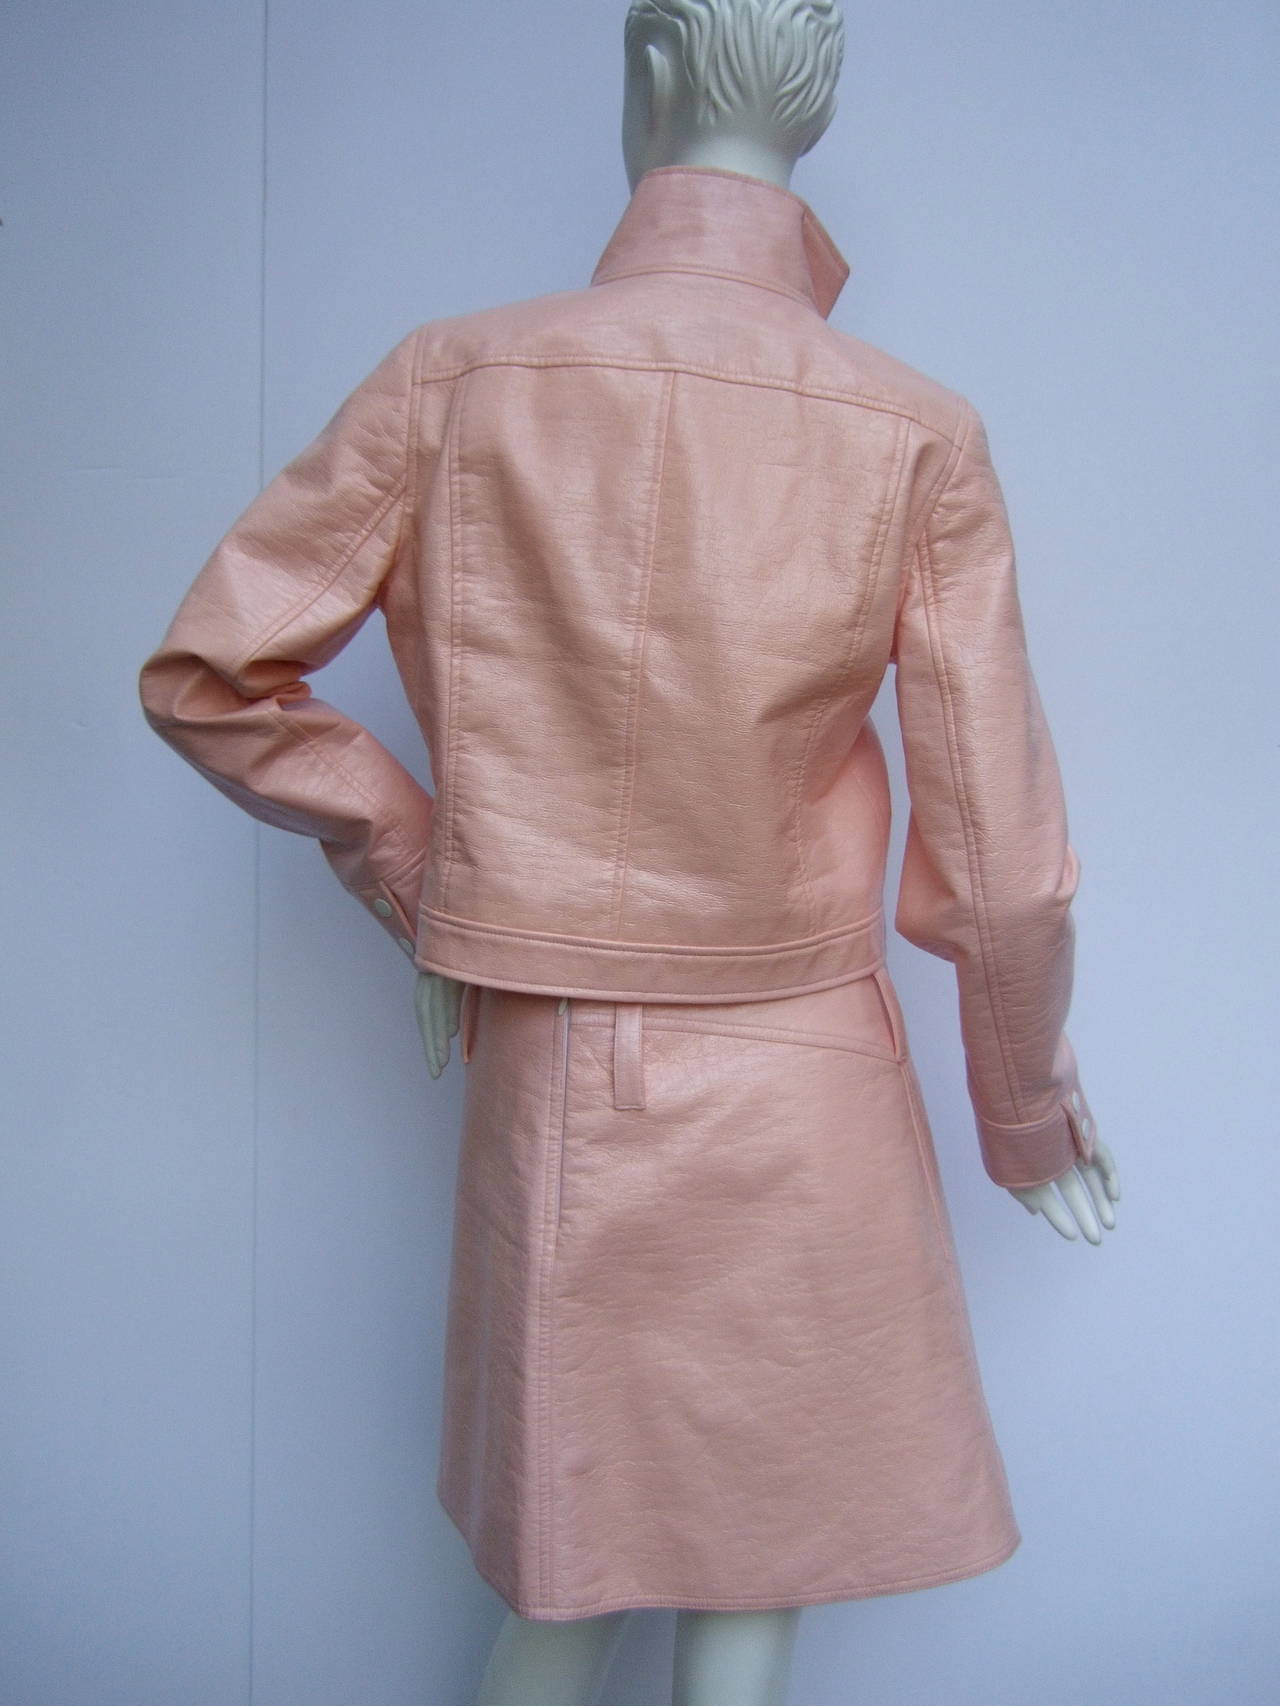 Women's Courreges Paris Iconic Mod Pink Vinyl Jacket & Skirt Suit Size 40